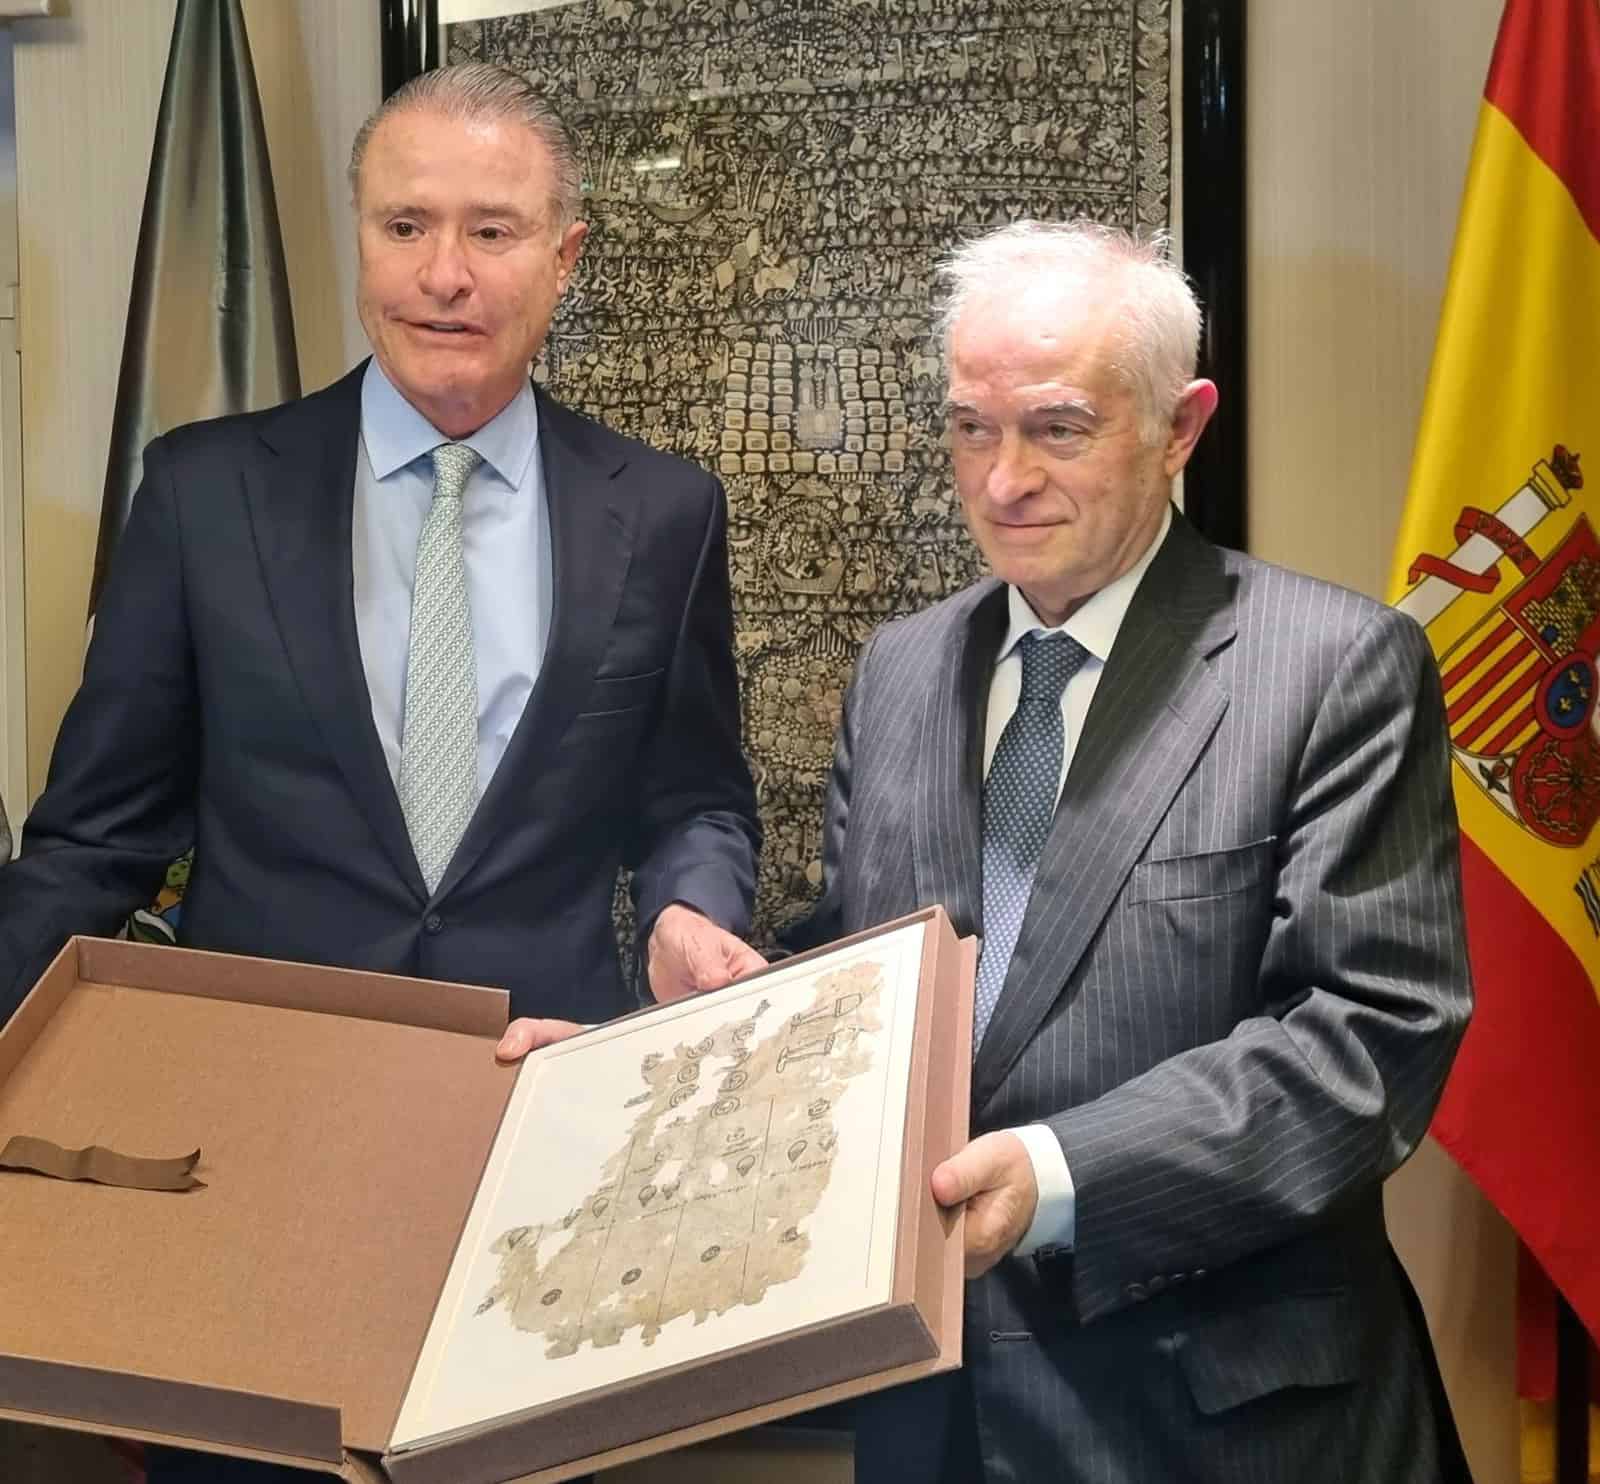 Dos hombres trajeados sostienen una carpeta que muestra un documento antiguo, delante de una bandera española.